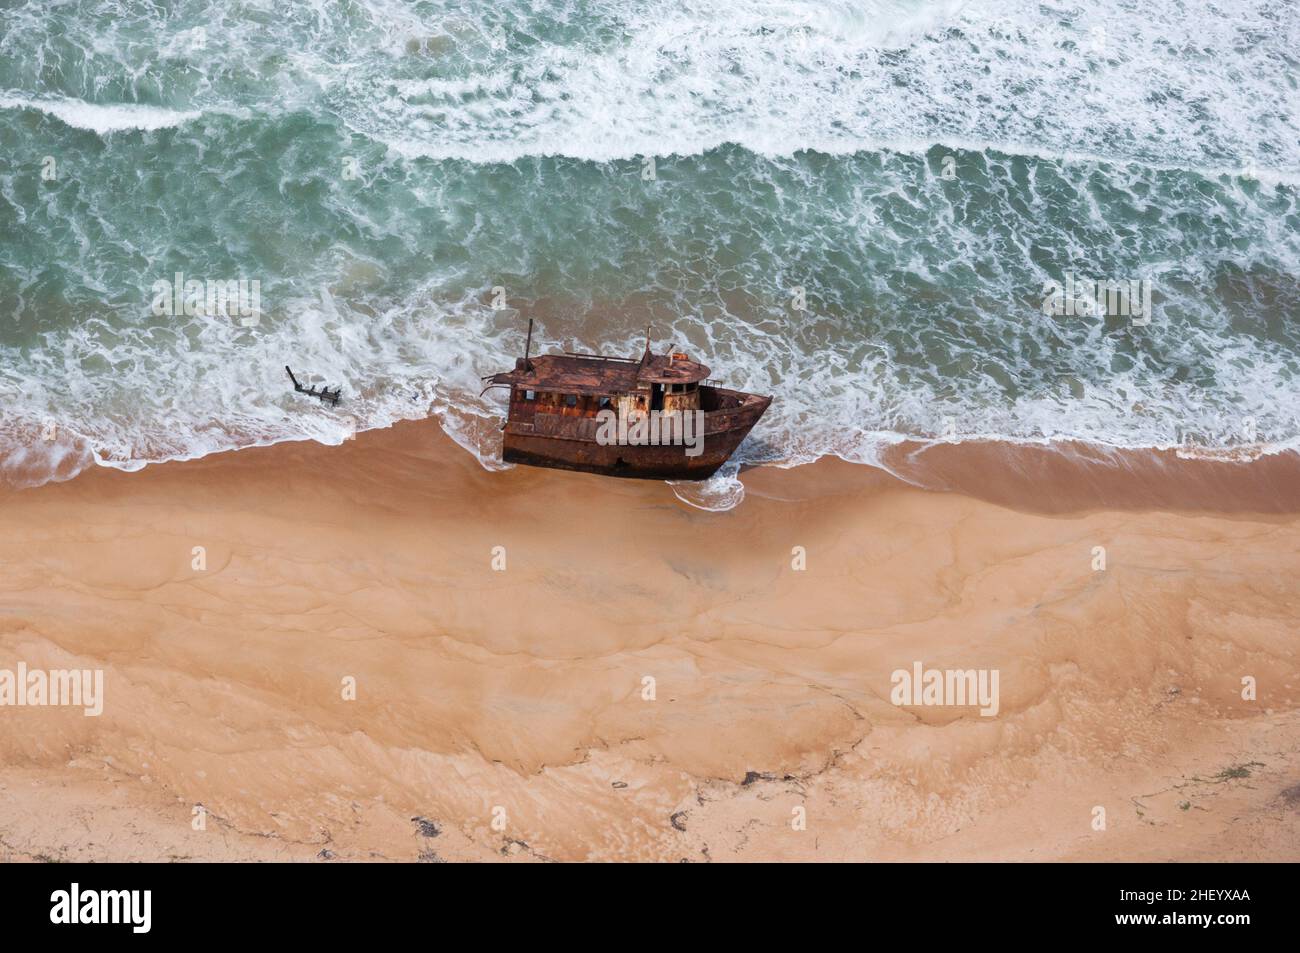 Als ich von Monrovia nach Freetown flog, konnte ich dieses Bild des Bogens eines Schiffes festhalten, das auf einem einsamen Strandabschnitt verlassen wurde. Sierra Leone 2011. Stockfoto